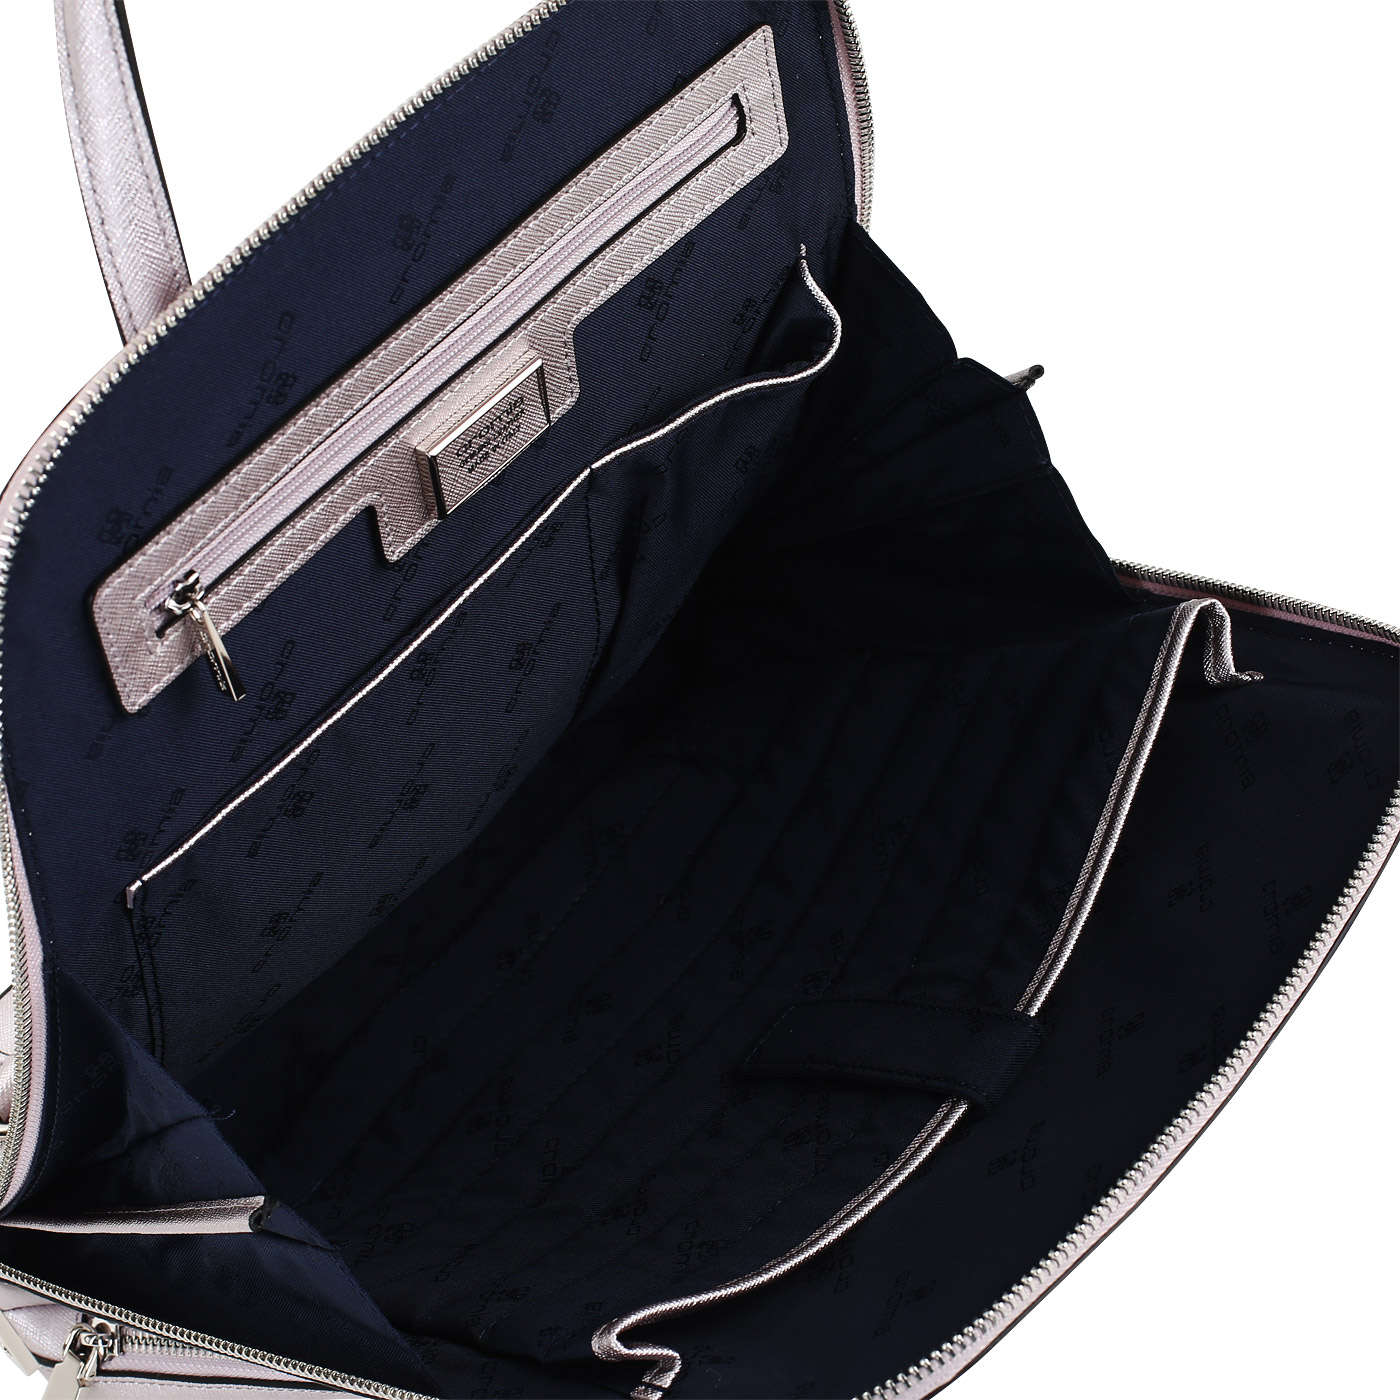 Сафьяновый рюкзак Cromia Perla